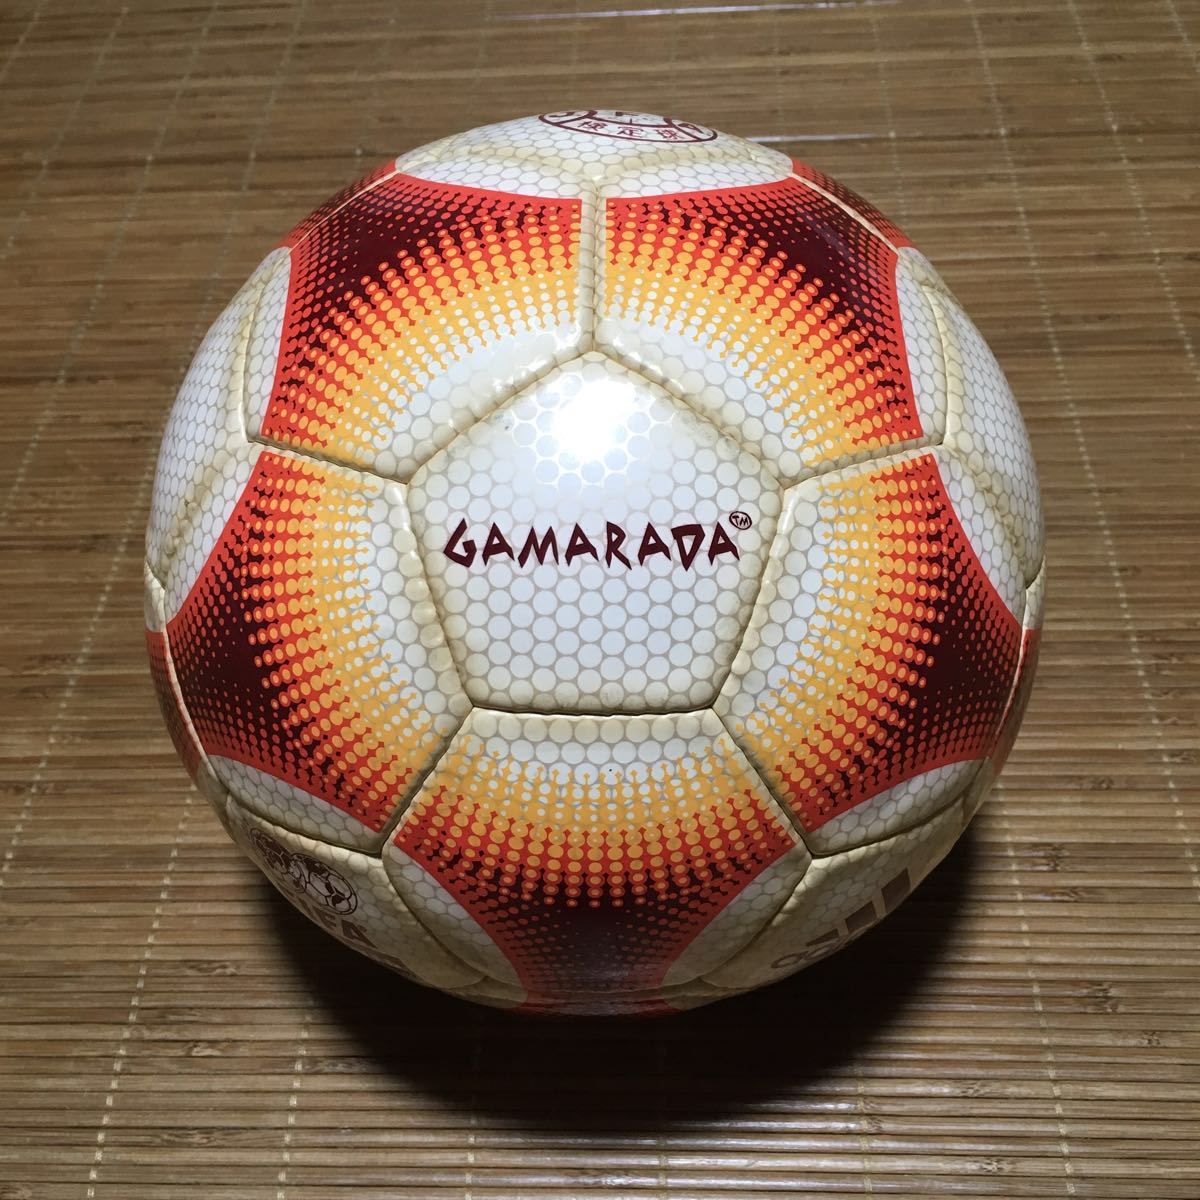 Adidas EQUIPMENT Gamarada ガマラダ サッカーボール 5号 2000 2001 シドニー オリンピック JFA FIFA 検定級 モロッコ製